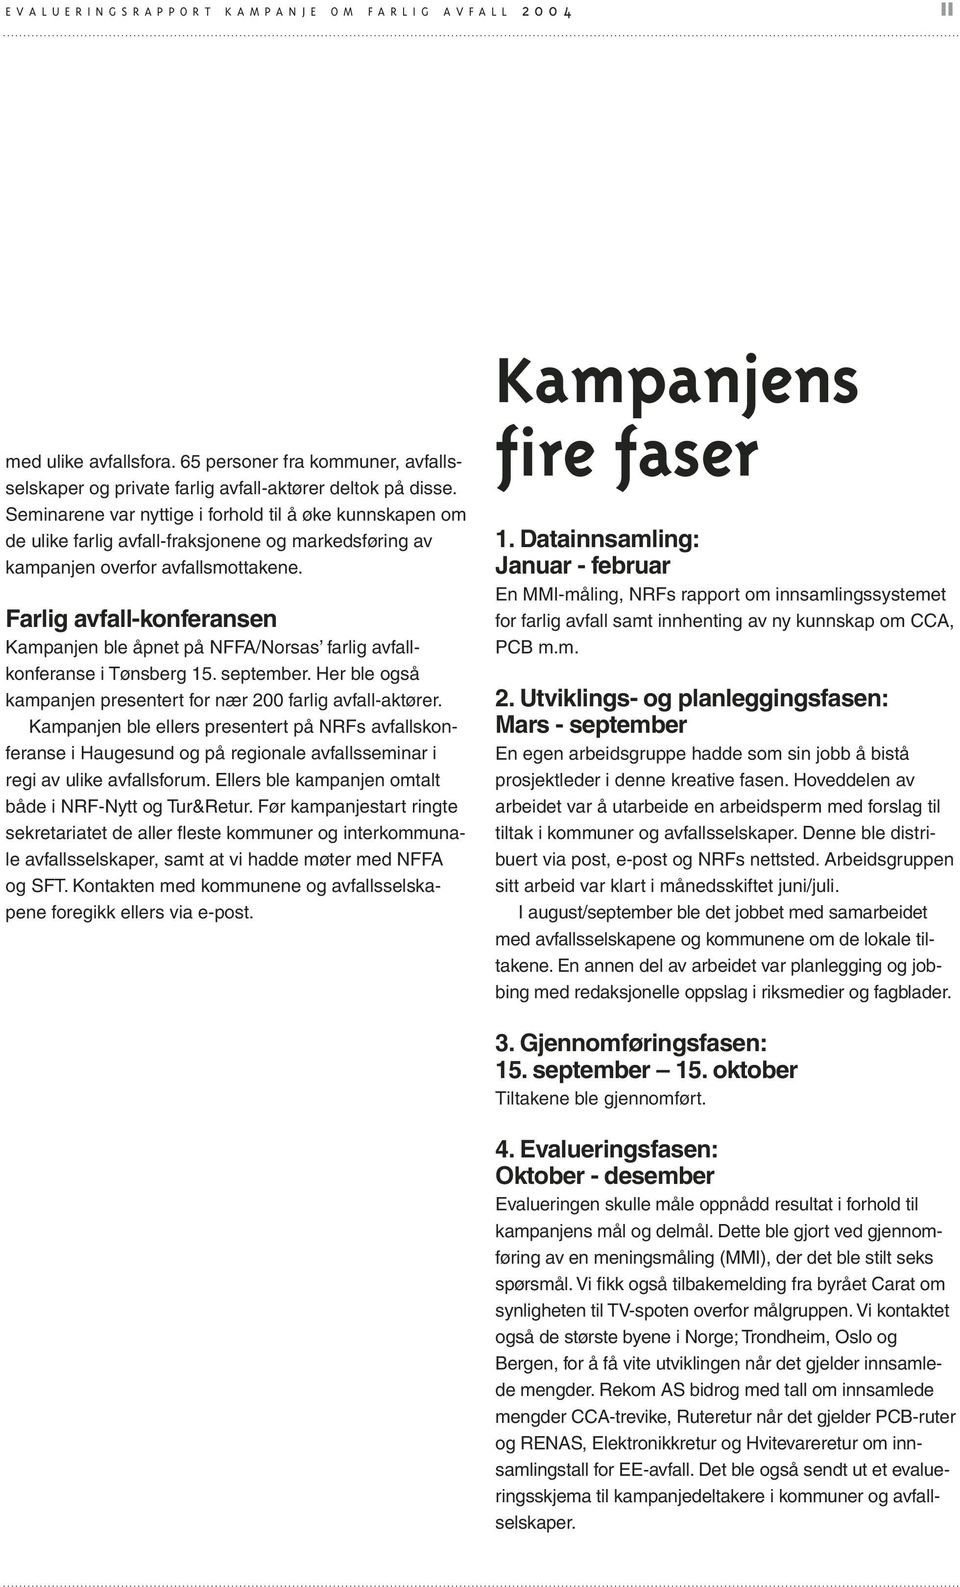 Farlig avfall-konferansen Kampanjen ble åpnet på NFFA/Norsas farlig avfallkonferanse i Tønsberg 15. september. Her ble også kampanjen presentert for nær 200 farlig avfall-aktører.